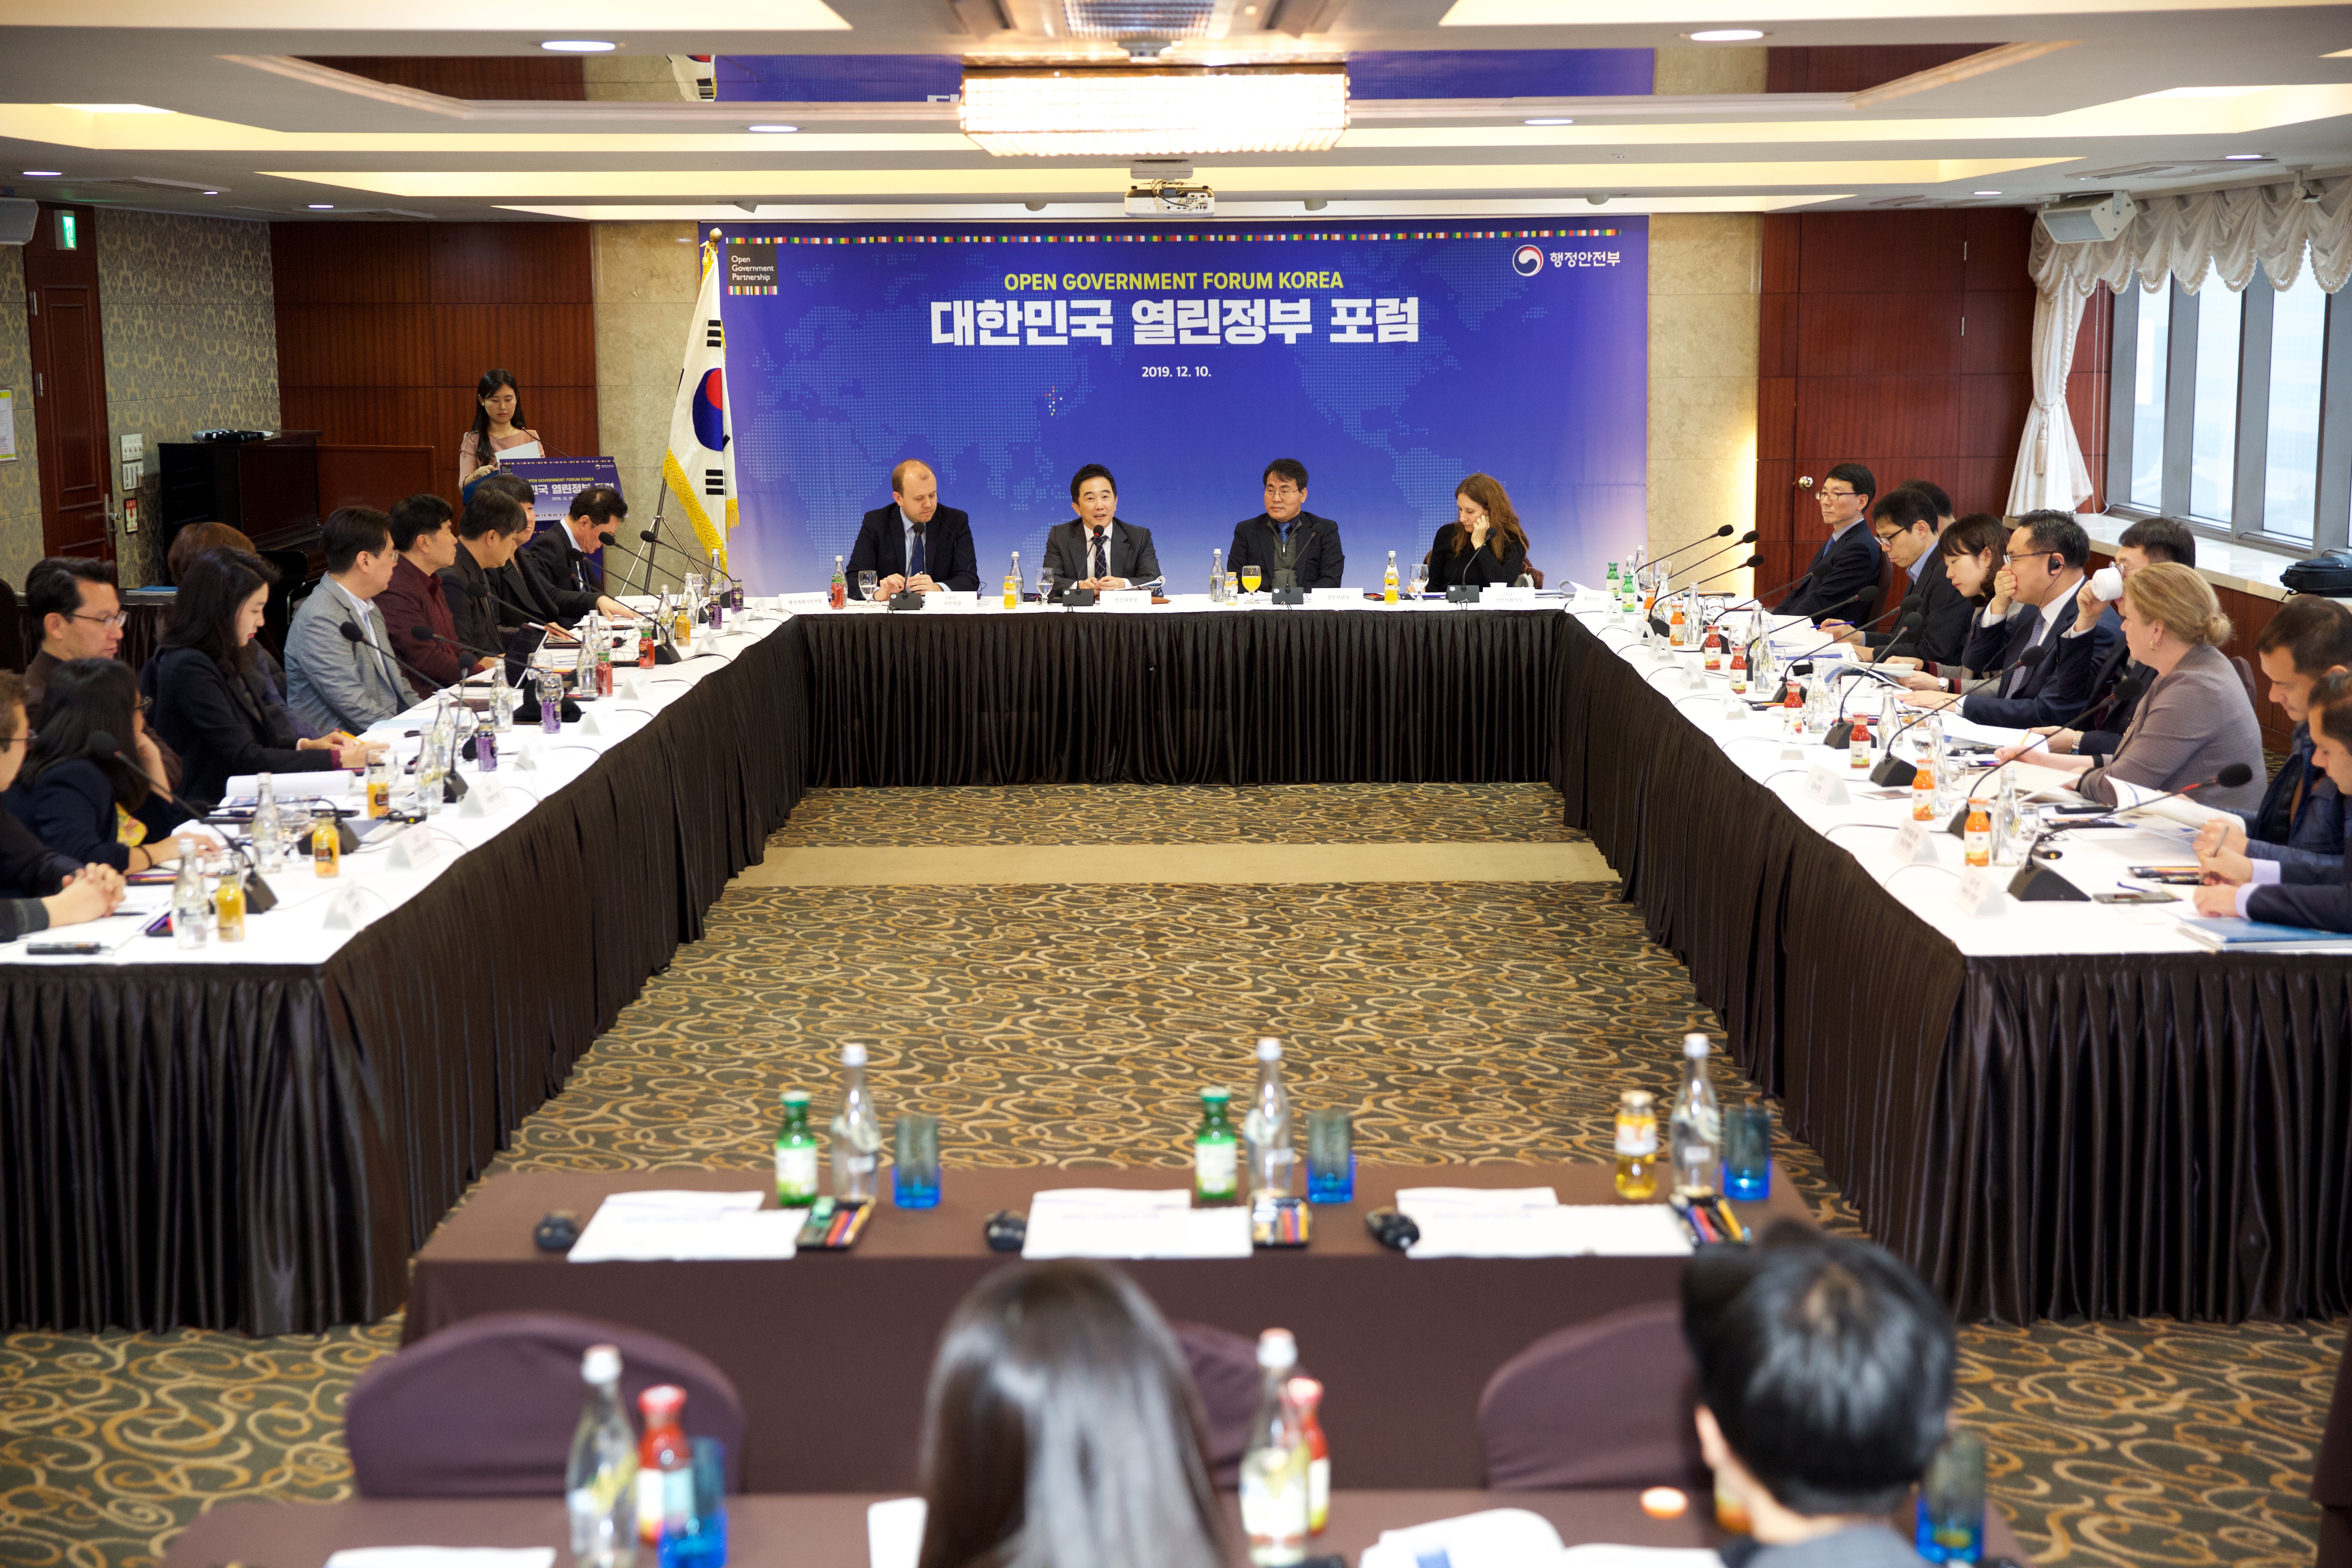 대한민국 열린정부 포럼 회의 관련사진 3